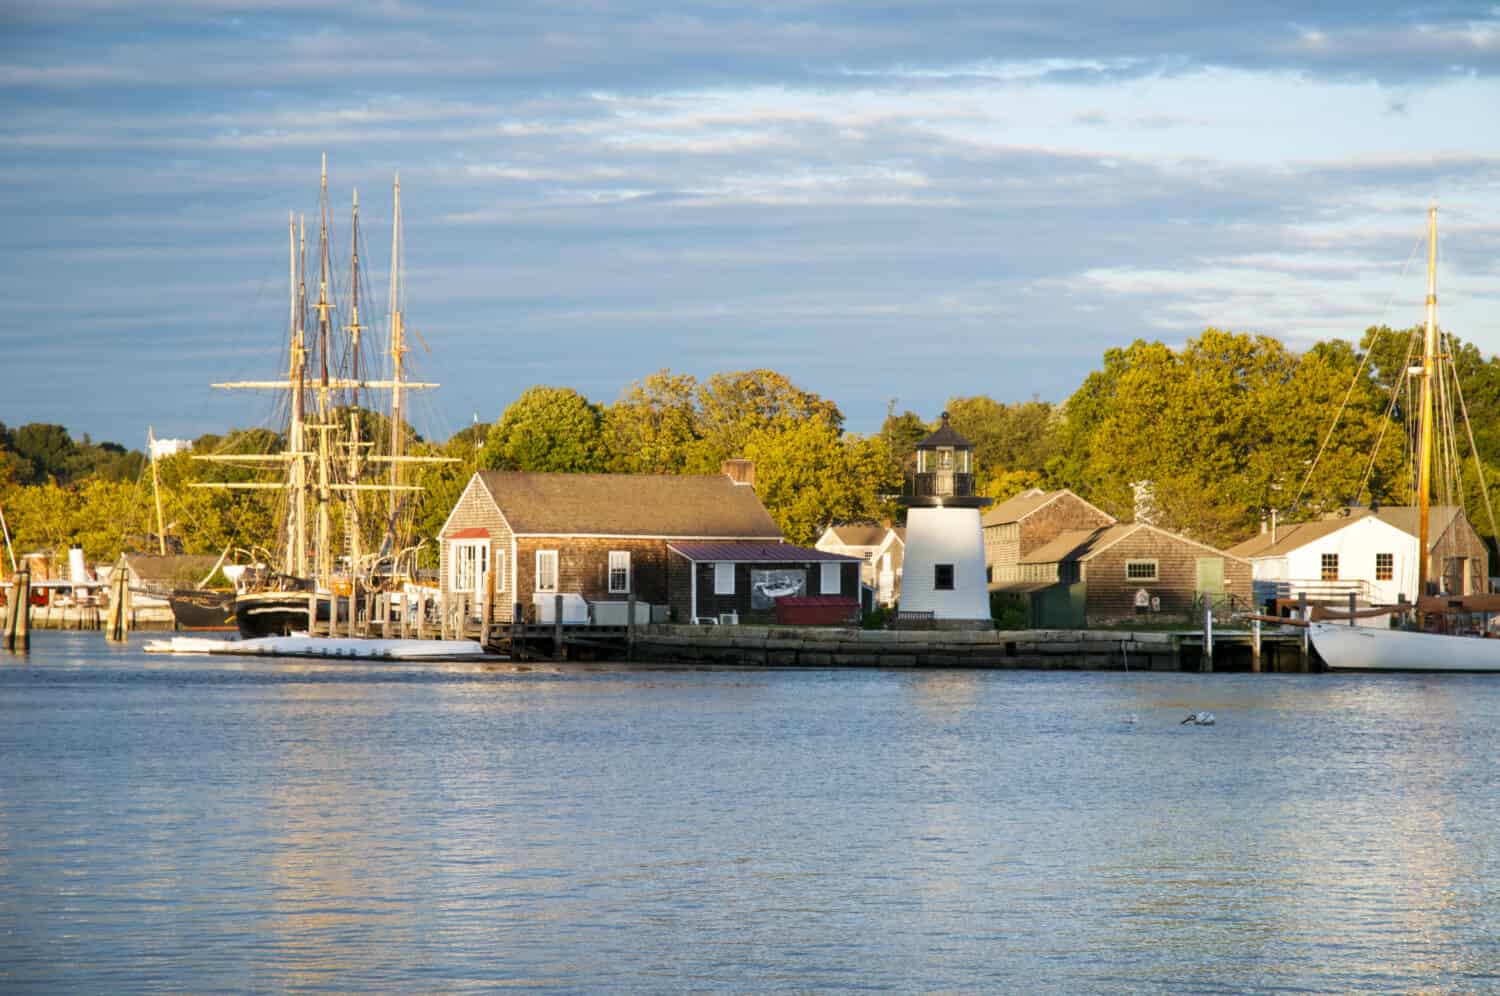 Tramonto di fronte a Mystic Seaport, un porto marittimo del XIX secolo ricreato all'aperto nel Connecticut.  I visitatori troveranno una nave baleniera e una replica della luce di Brant Point dall'isola di Nantucket.